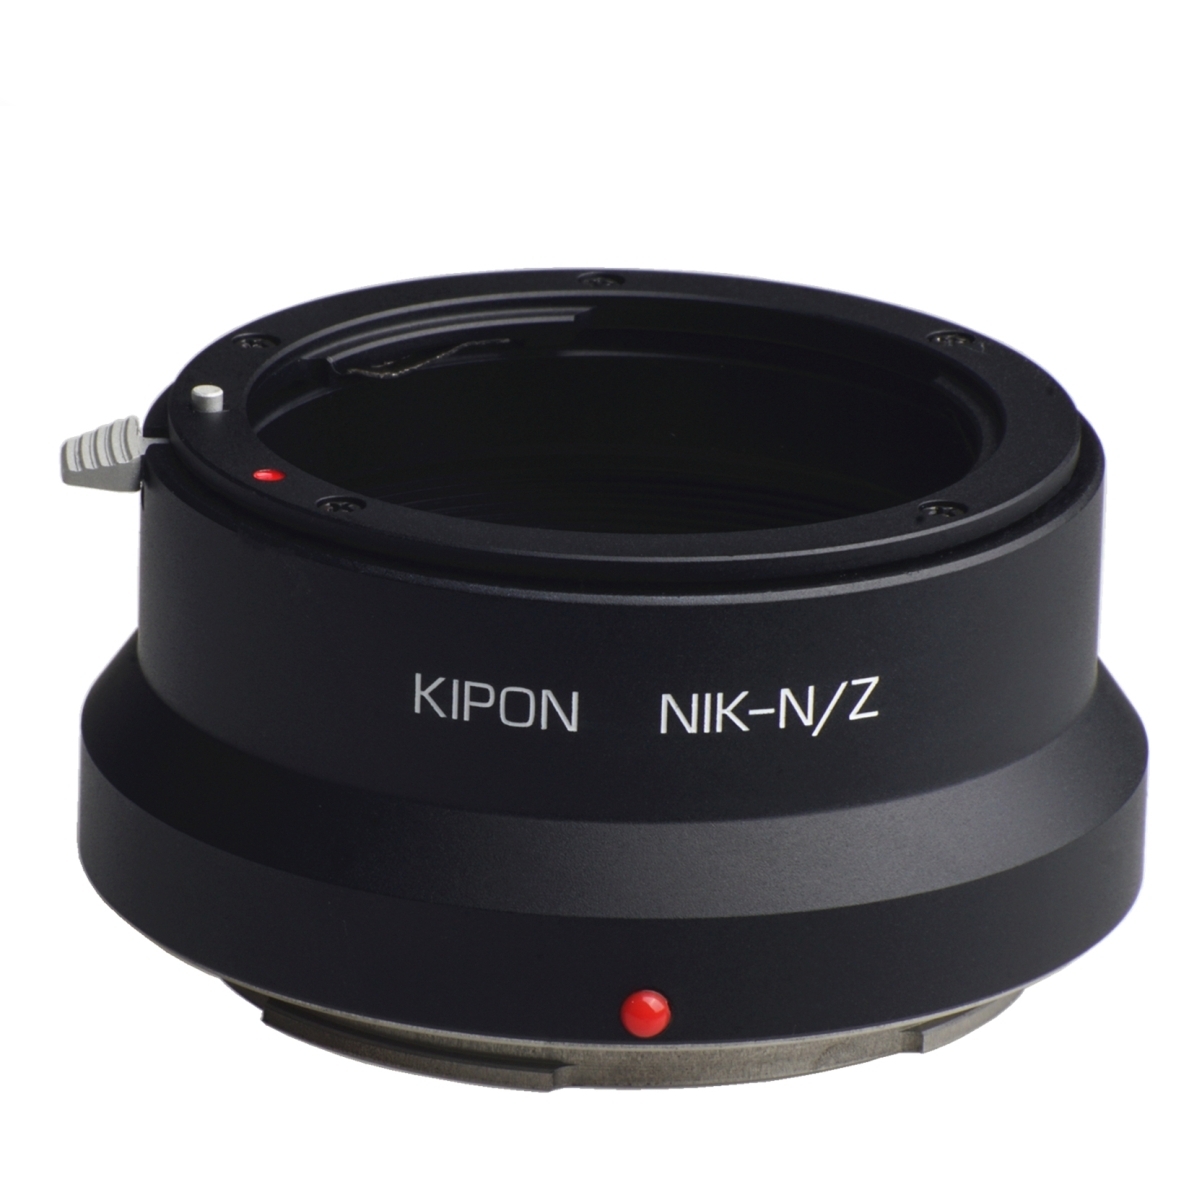 Adattatore Kipon per Nikon F a Nikon Z